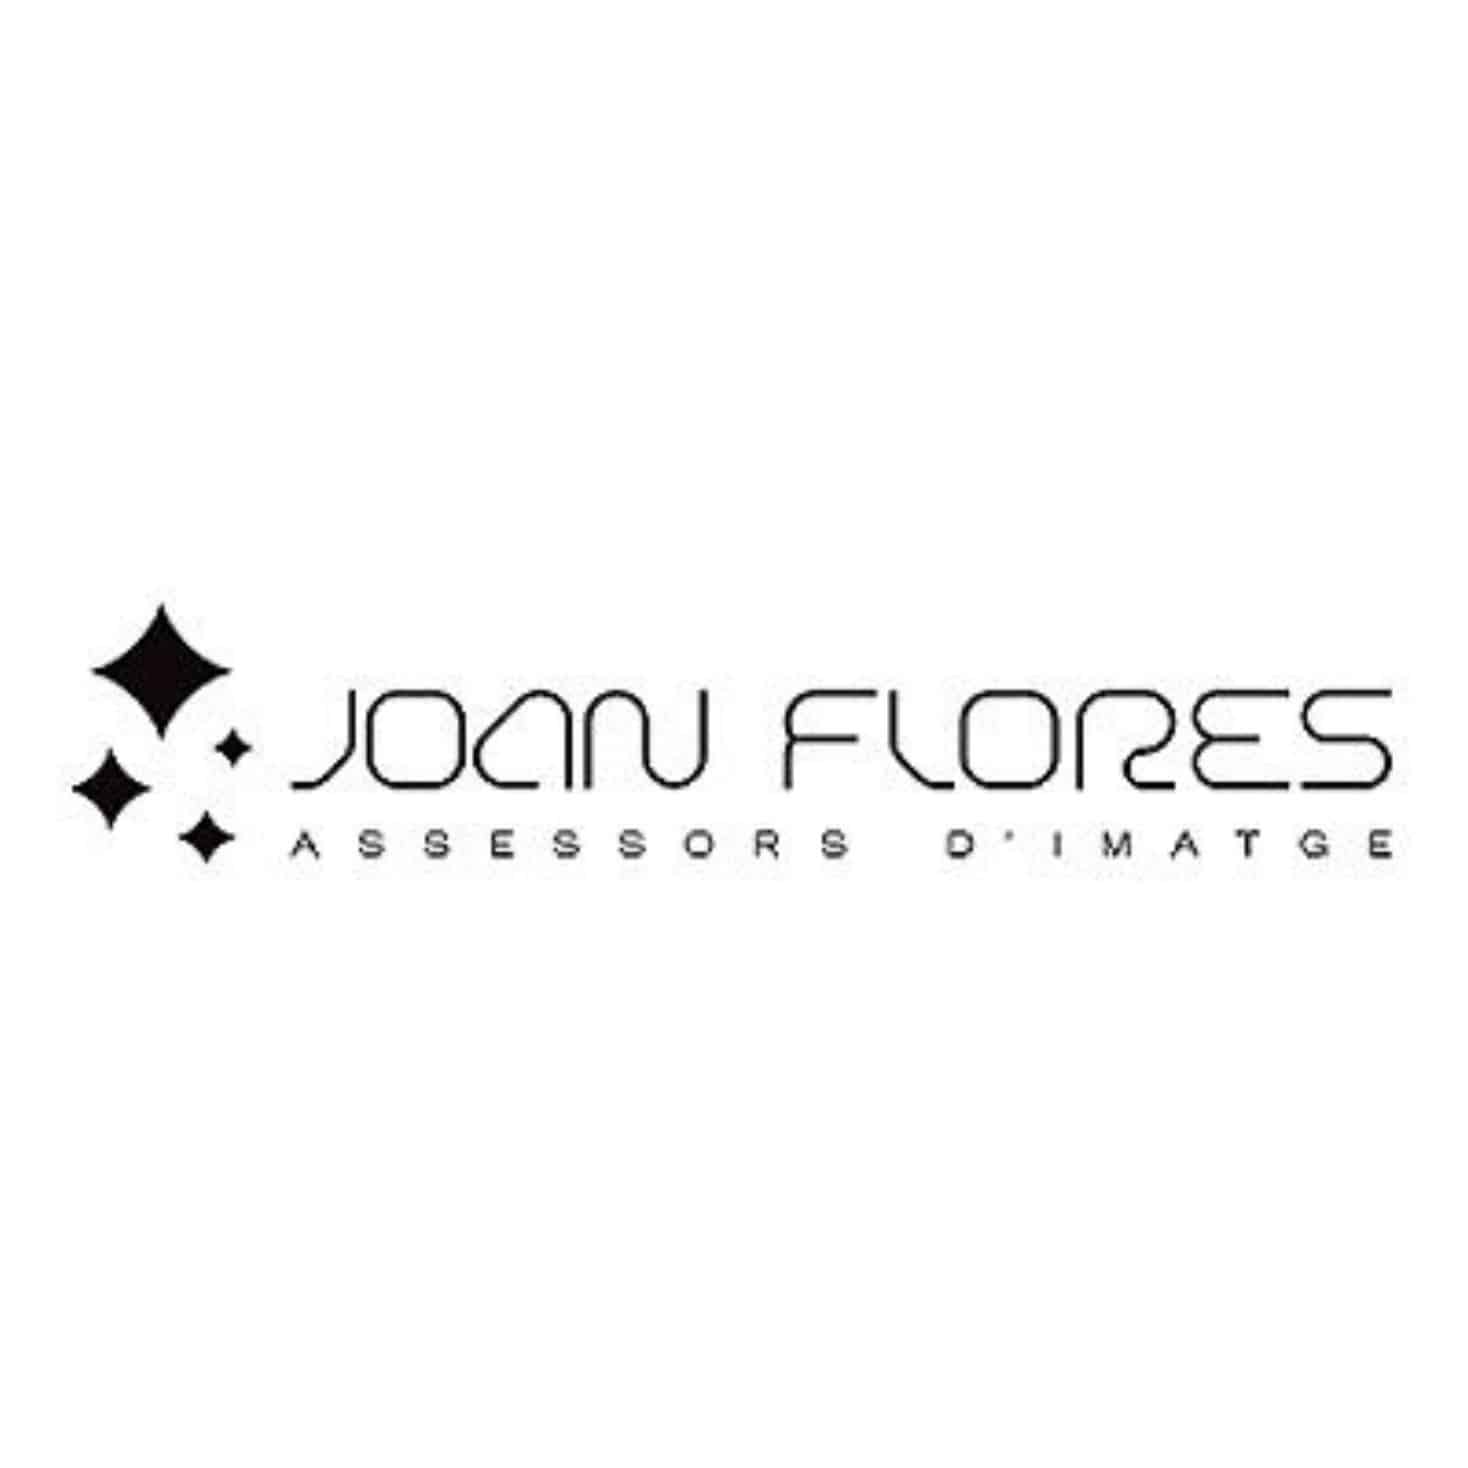 Joan Flores Assessors d'Imatge